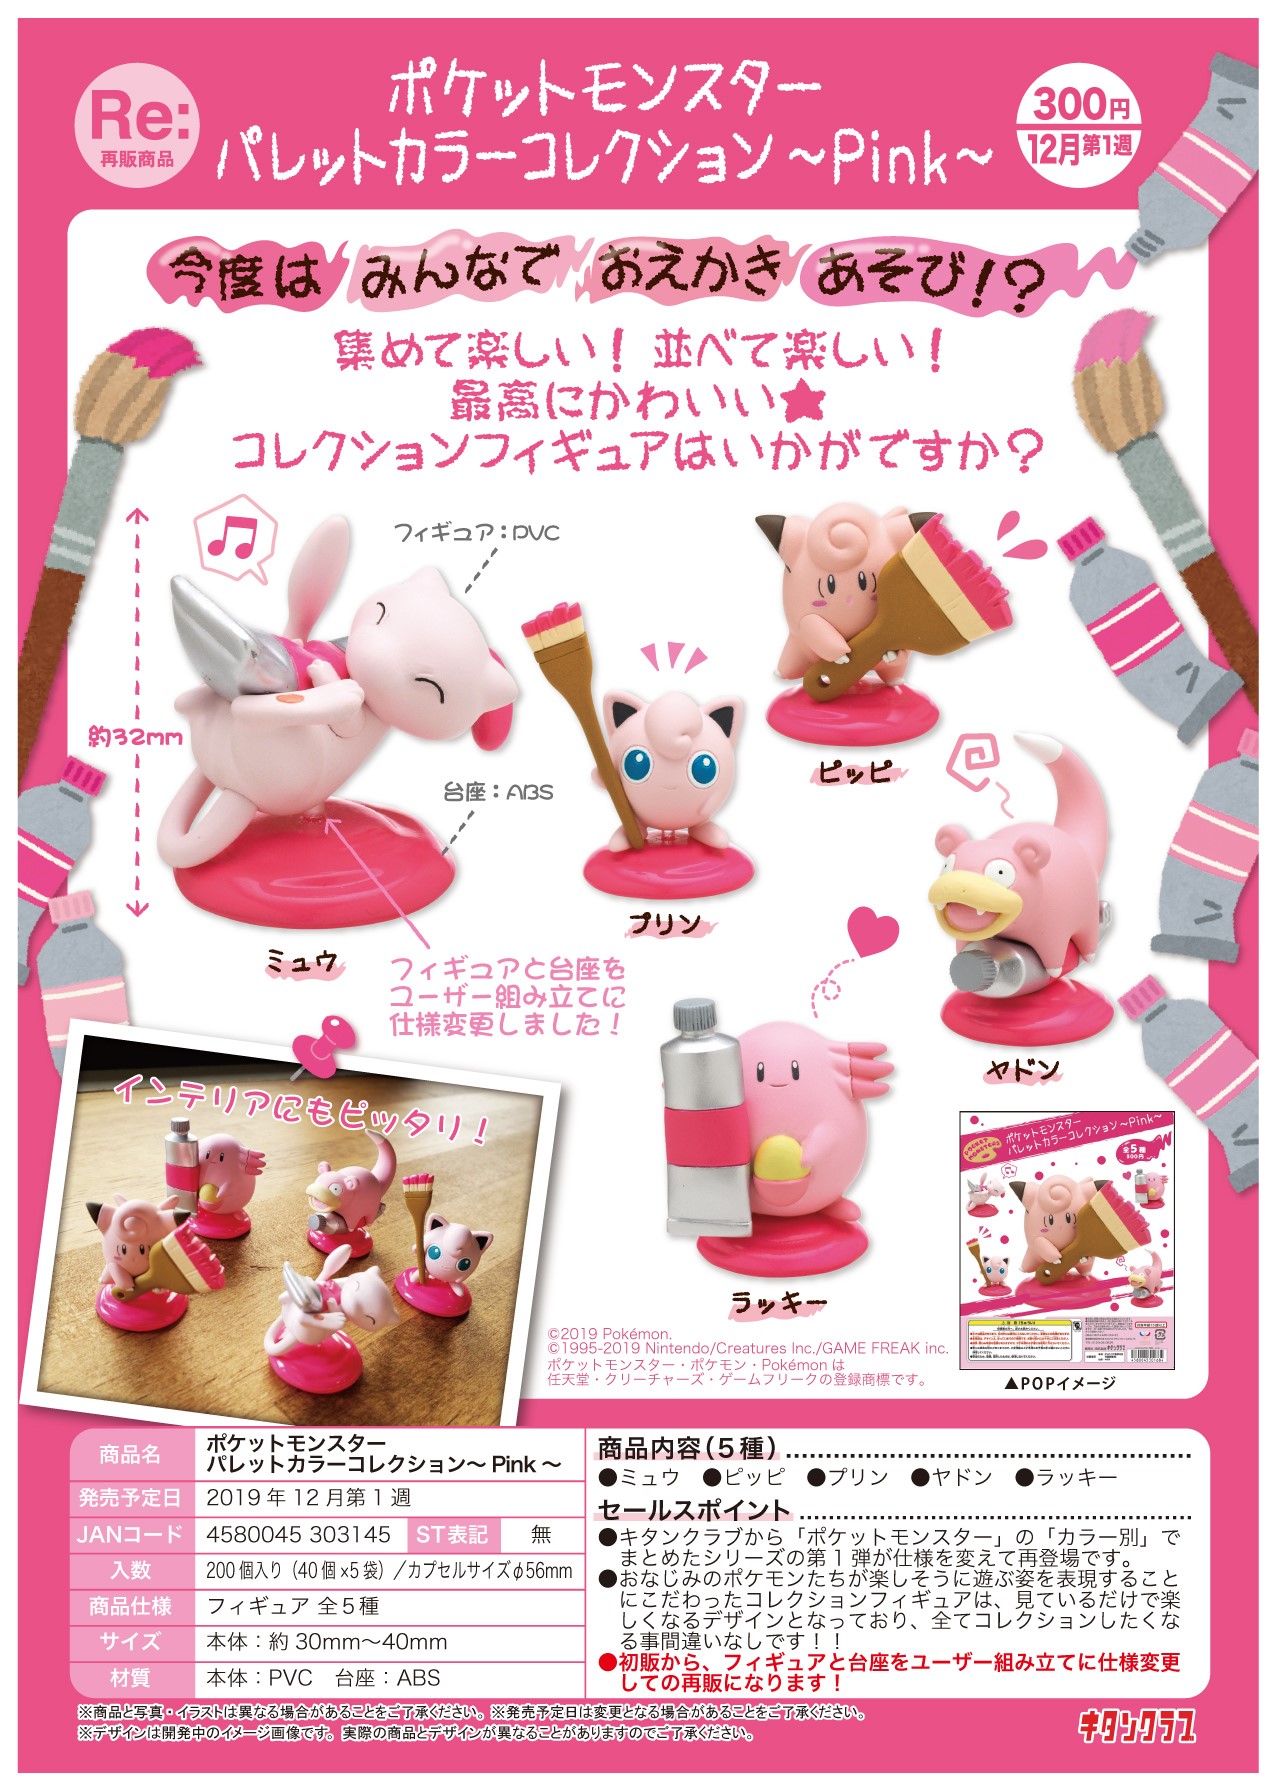 300日元扭蛋 小手办 口袋妖怪系列 画家调色盘~Pink~ 全5种 (1袋40个) 303145